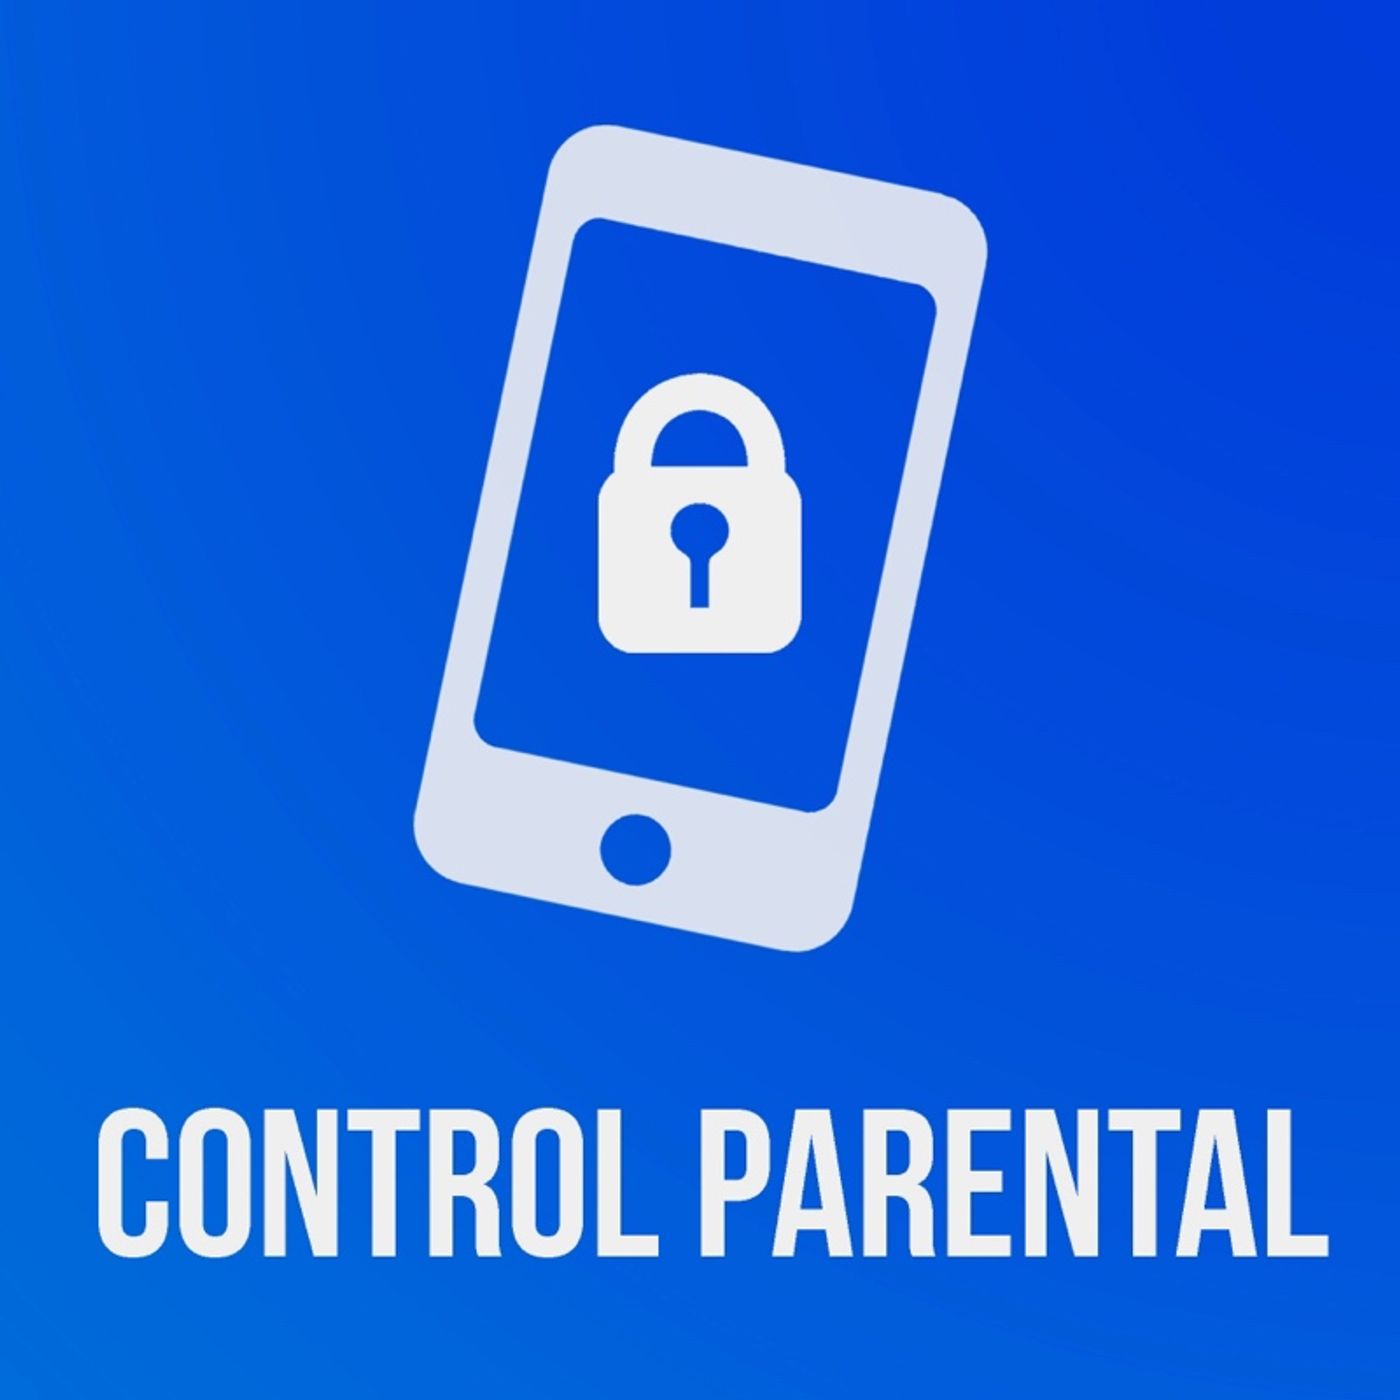 Guía para padres - Protege a tus hijos en internet (Parte 1)